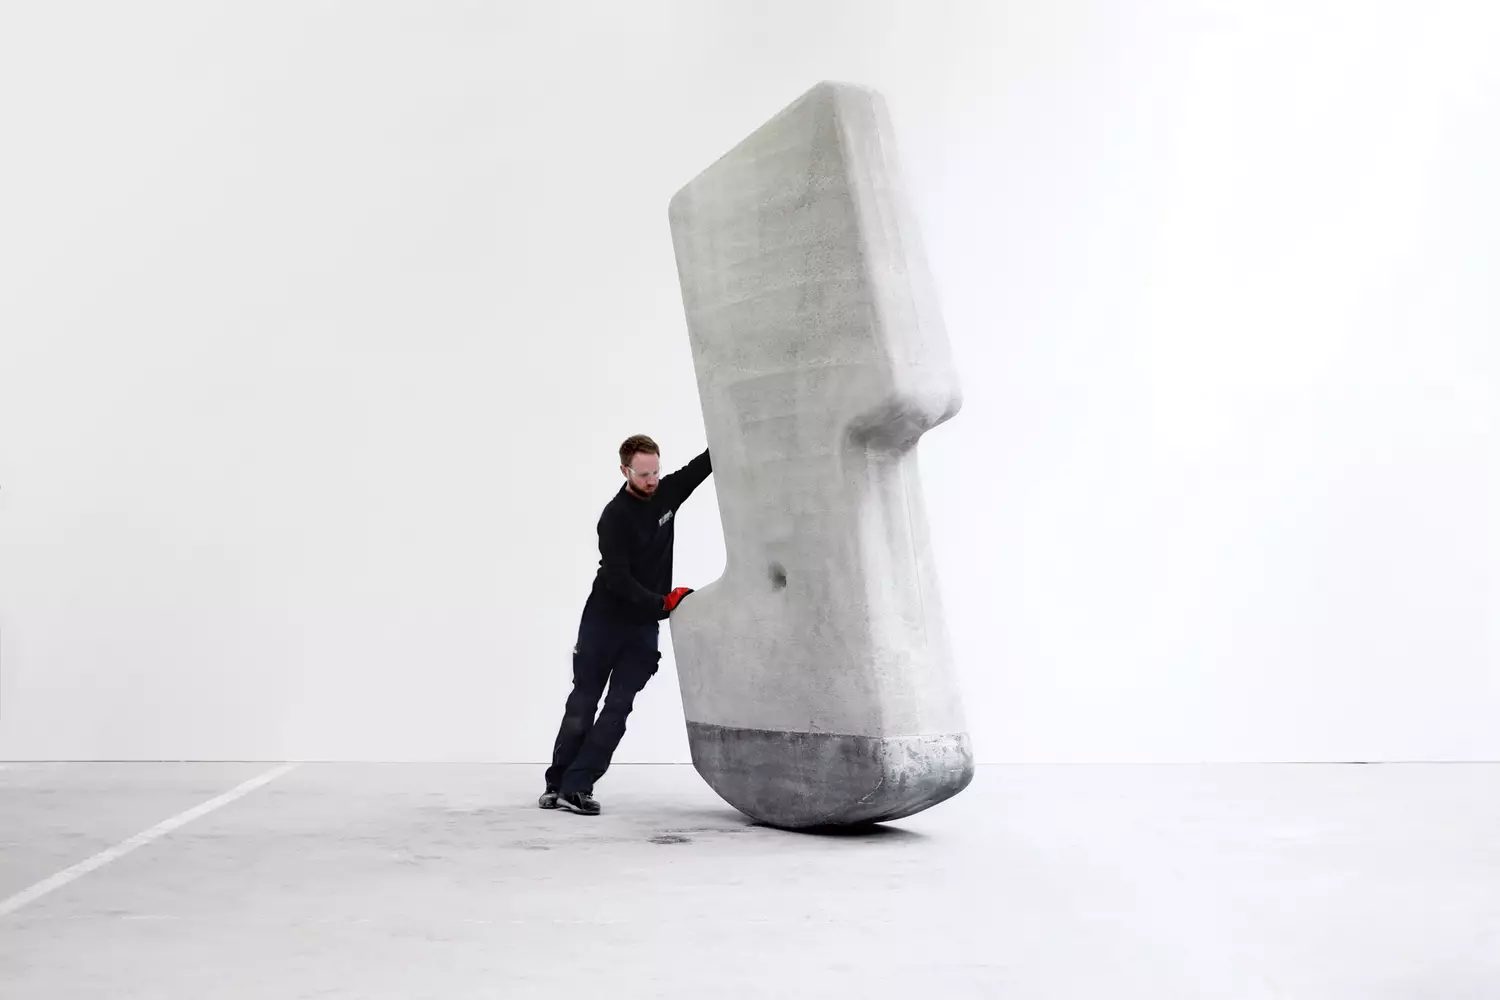 Камень весом в 25 тонн можно просто переносить руками